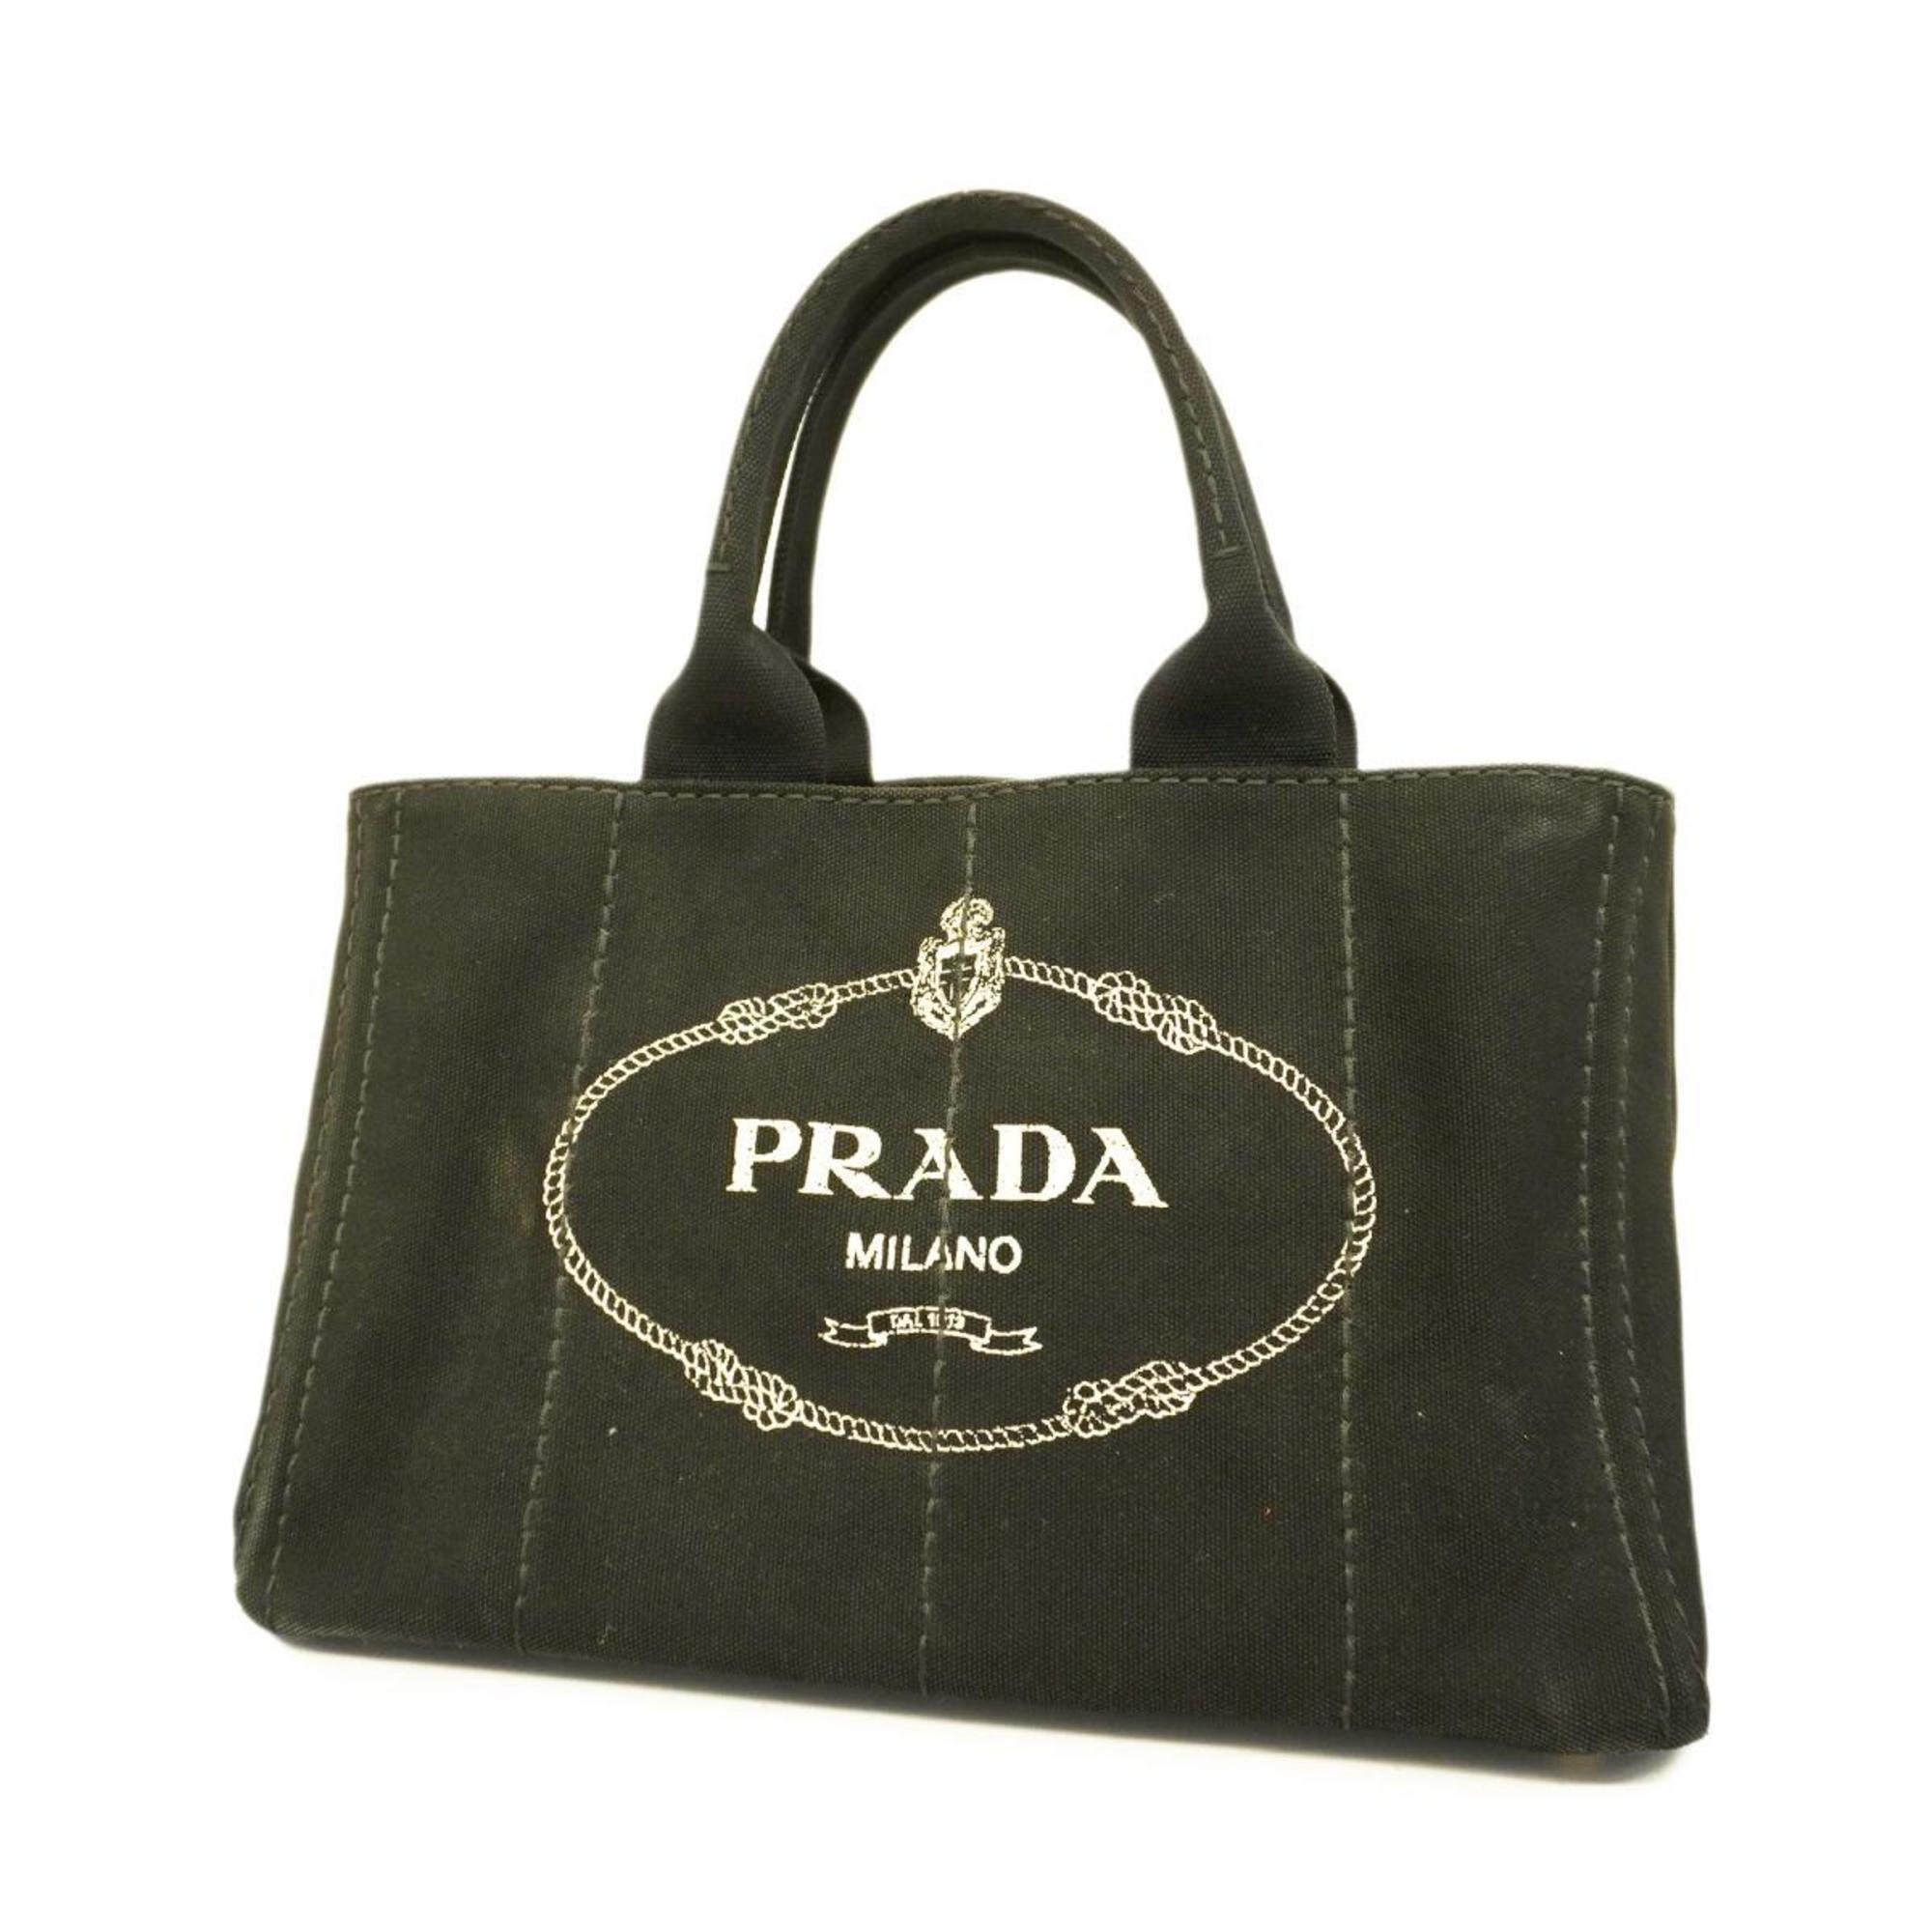 プラダ(Prada) プラダ トートバッグ カナパ キャンバス ブラック 